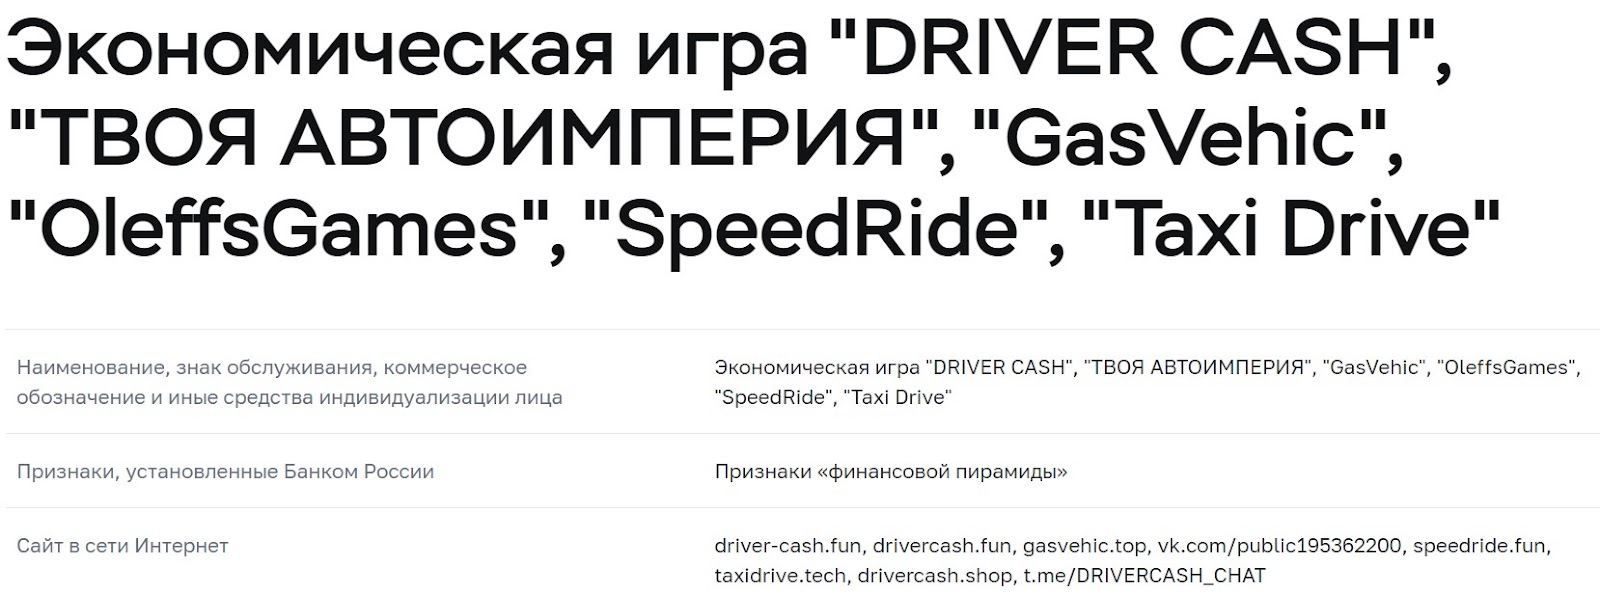 driver cash игра